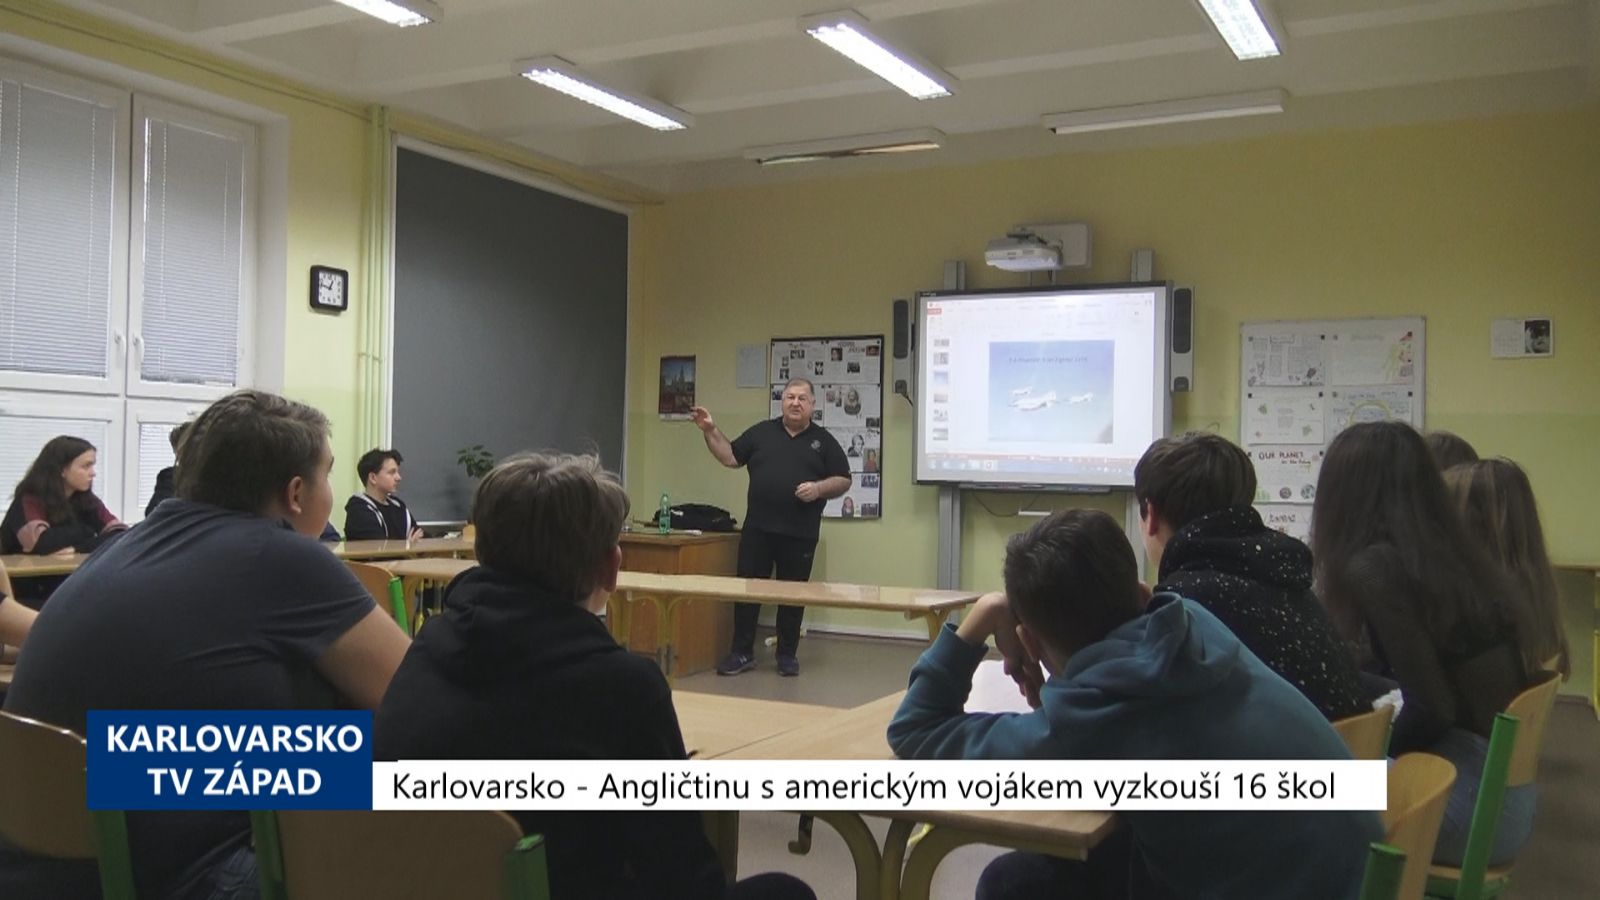 Karlovarsko: Angličtinu s americkým vojákem vyzkouší 16 škol (TV Západ)	